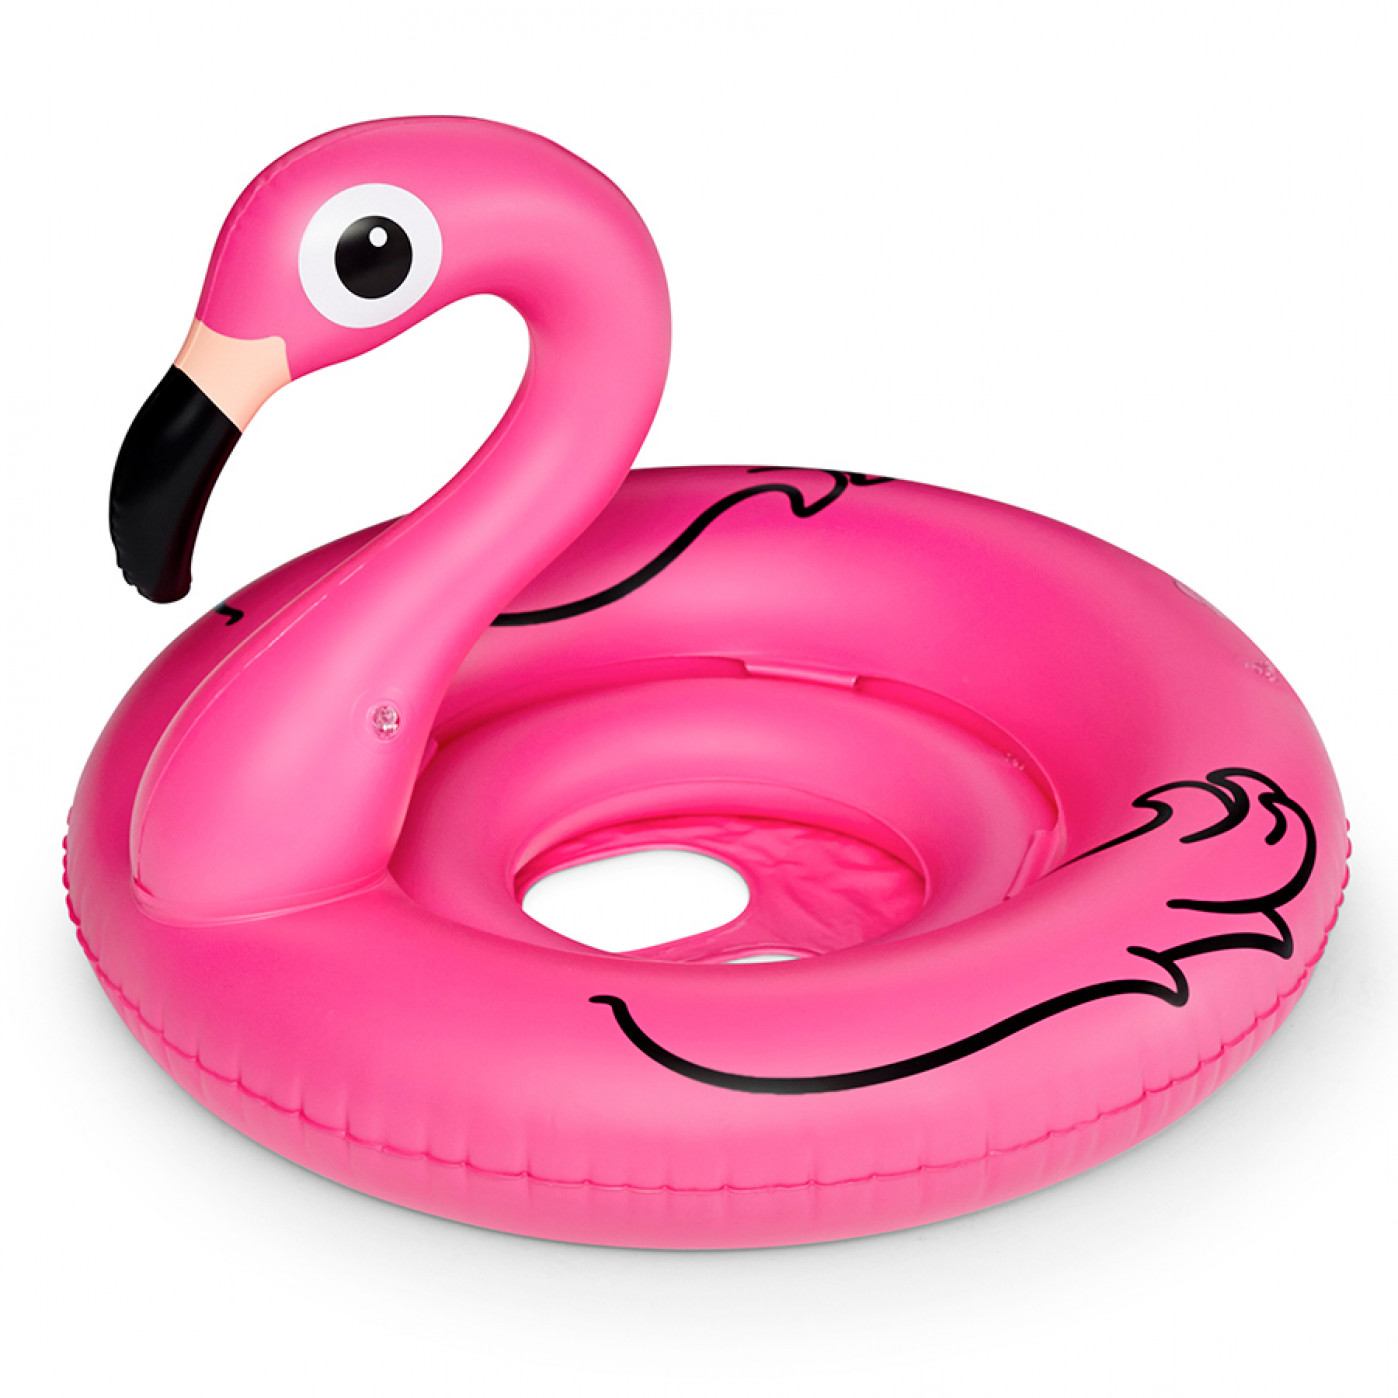 Фламинго для плавания. Надувной круг Фламинго. Фламинго надувной детский. Надувной детский круг Фламинго Baby Inflatable Flamingo. Круг надувной розовый Фламинго.